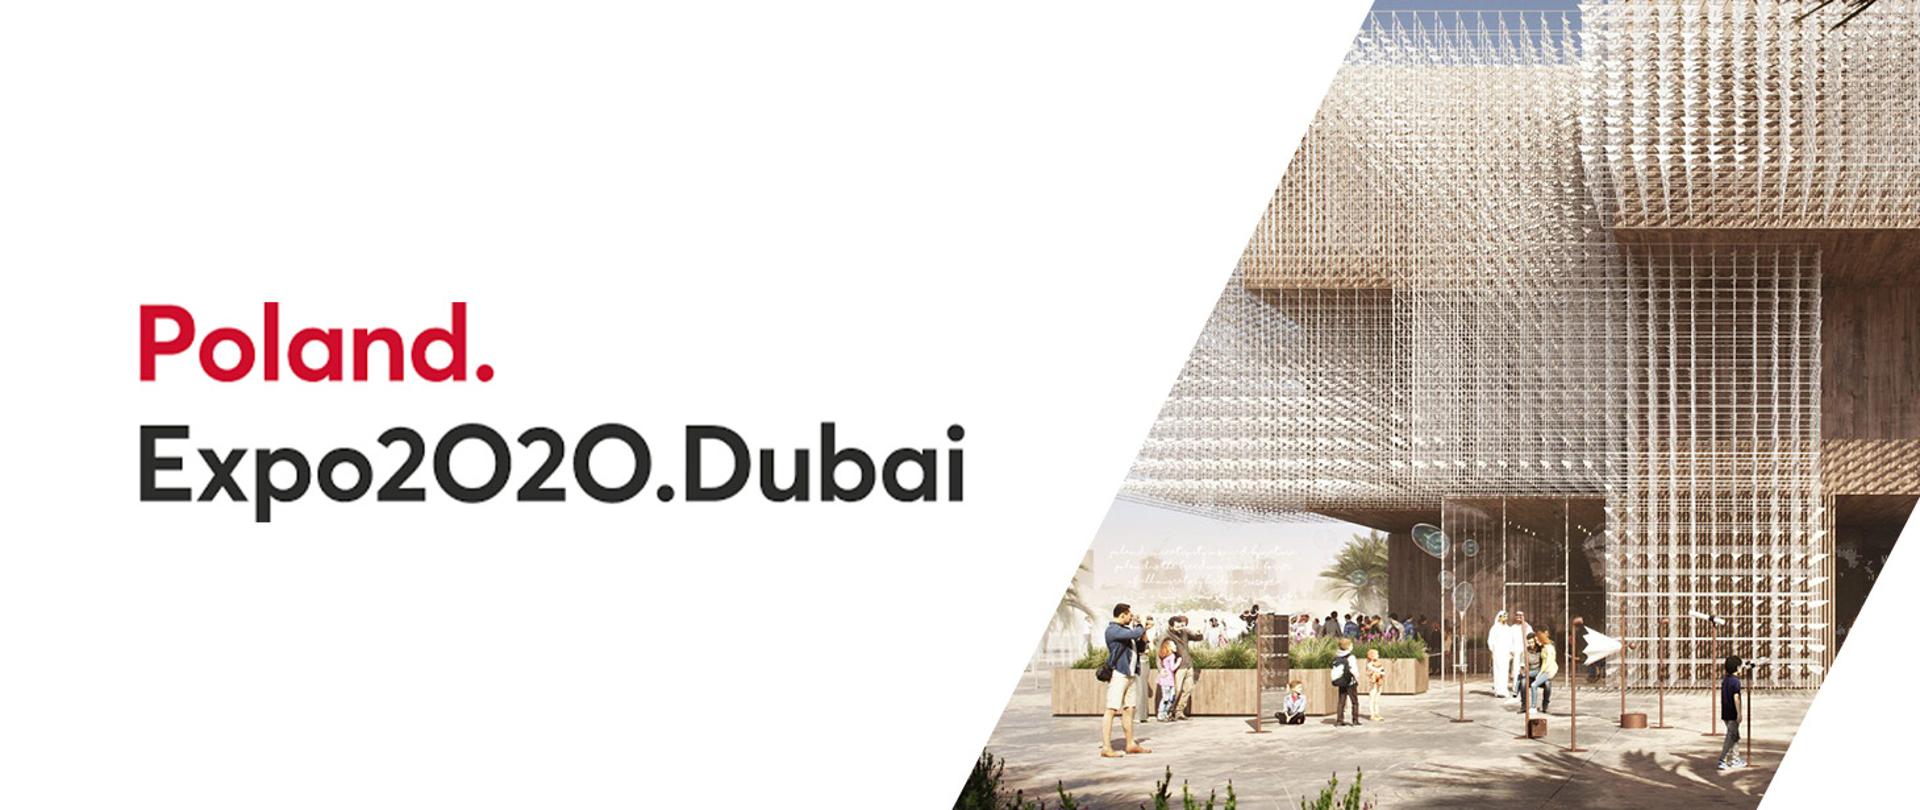 Grafika przedstawiająca napis "Poland Expo2020.Dubai", po prawej stronie ludzie stojący przed pawilonem wystawowym